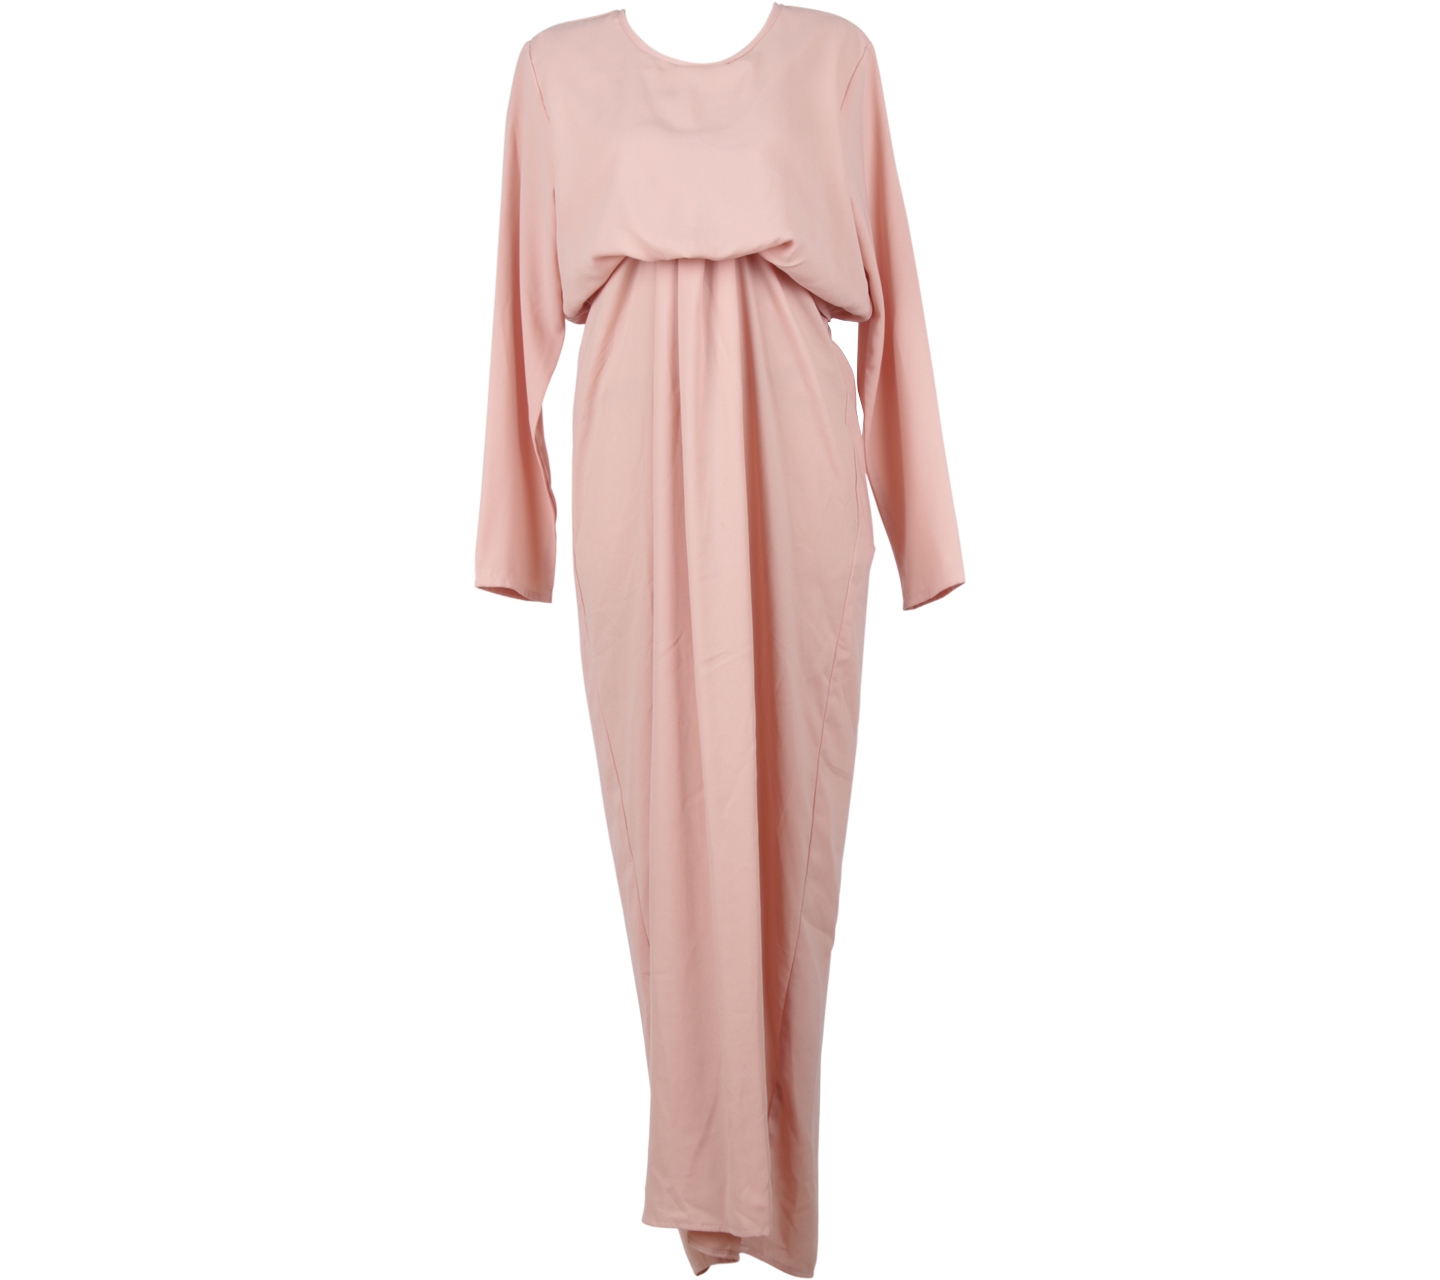 Treimee Pink Long Dress